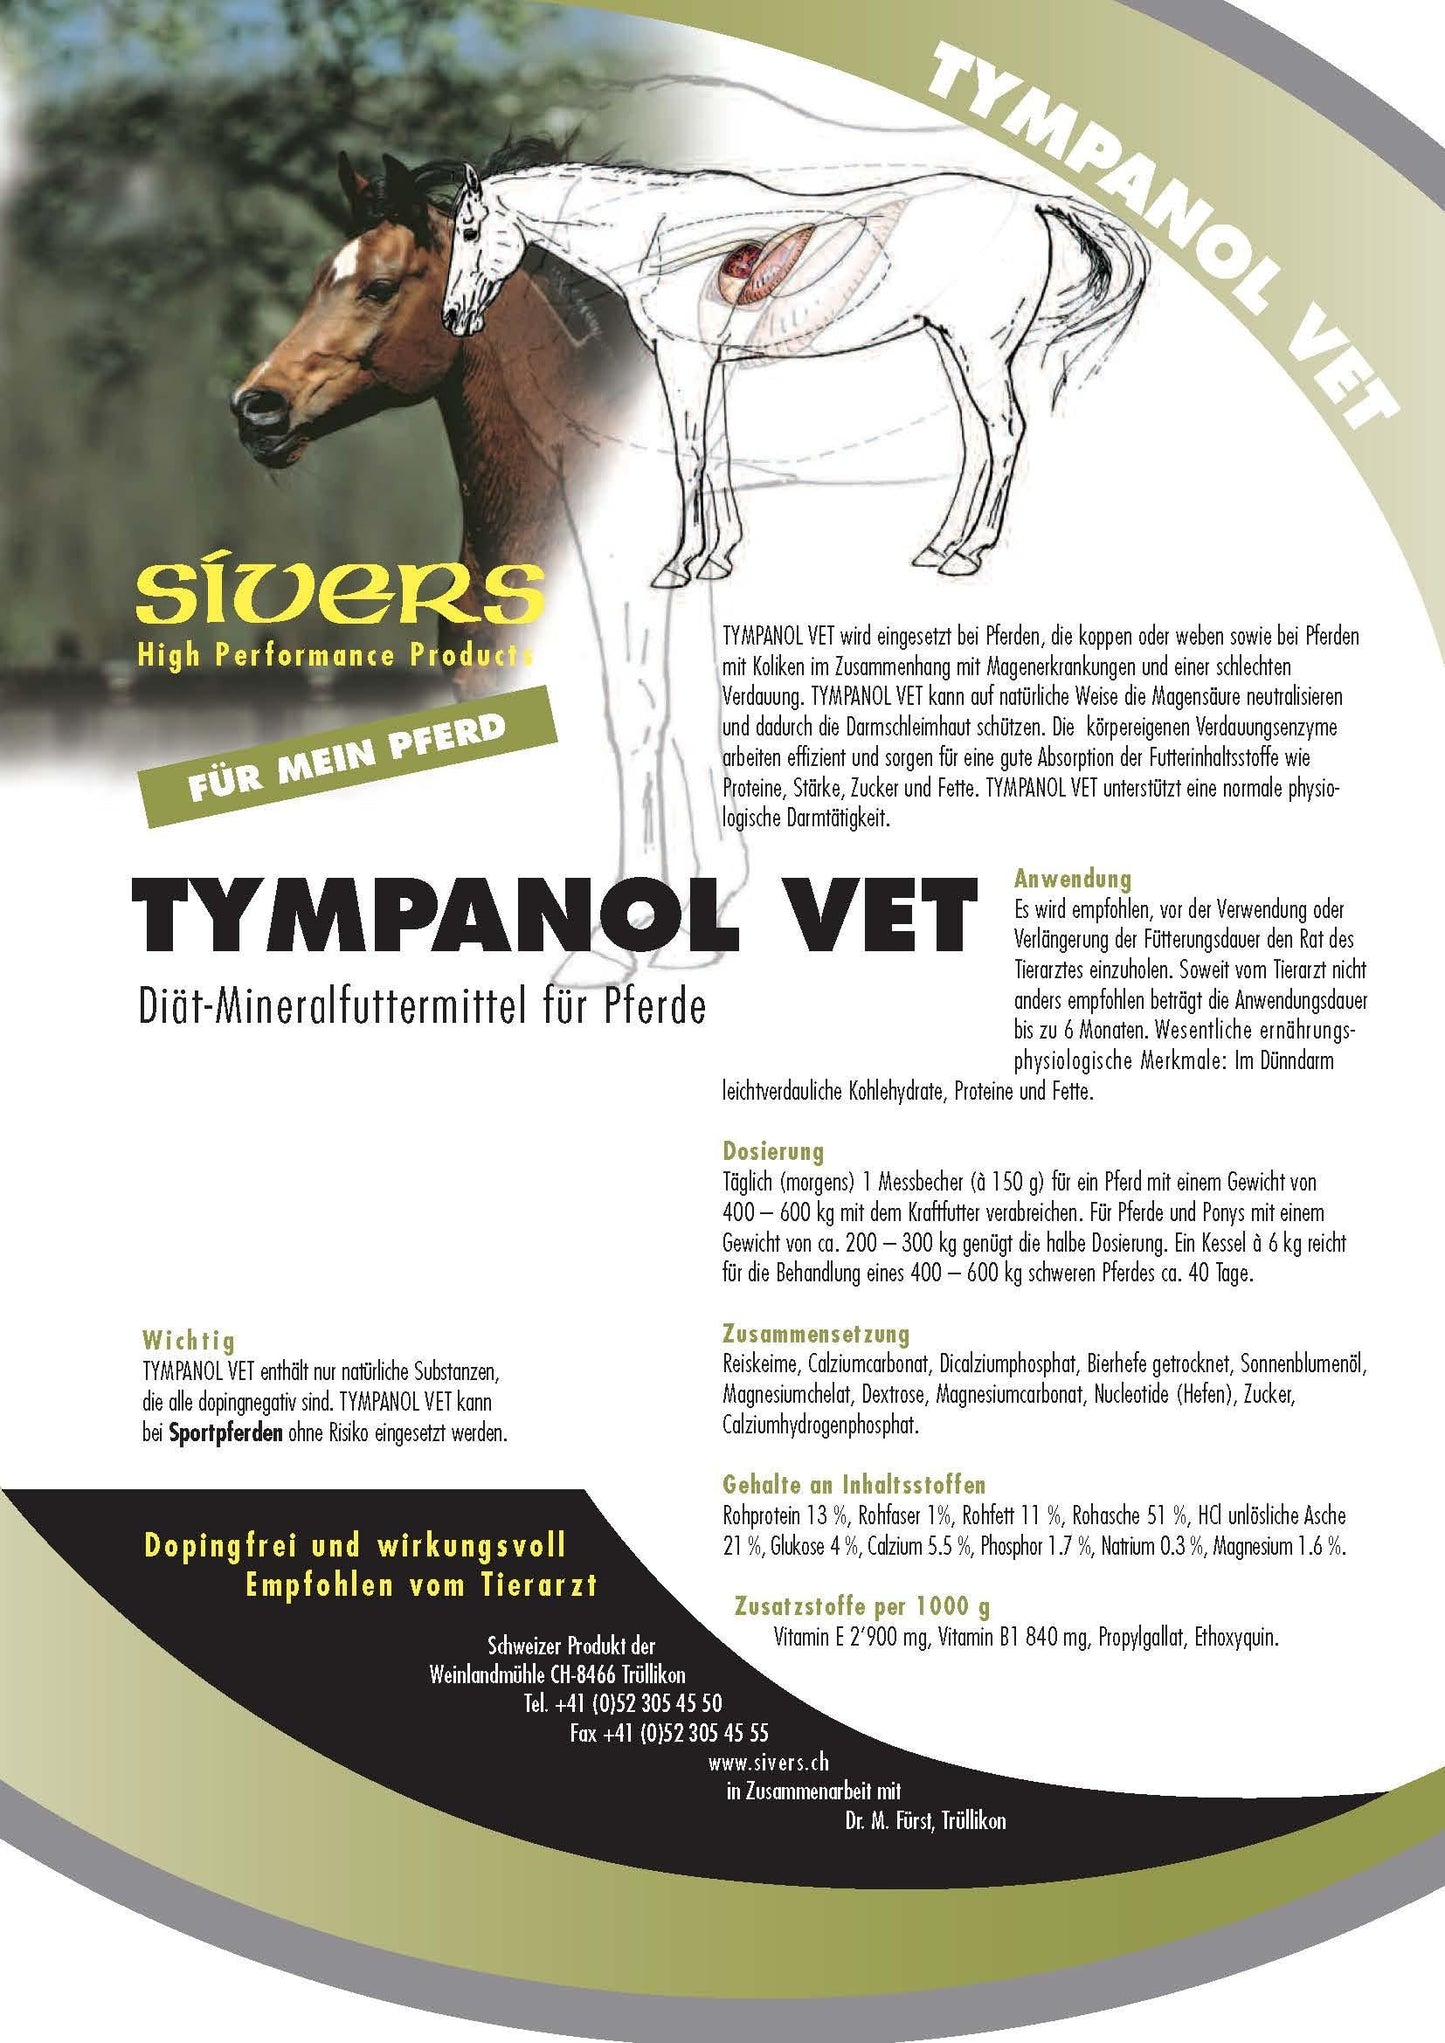 Tympanol Vet - Sivers - Ergänzungsfuttermittel:Verdauung, Tierart:Pferd - Marigin AG Onlineshop für Tierbedarf